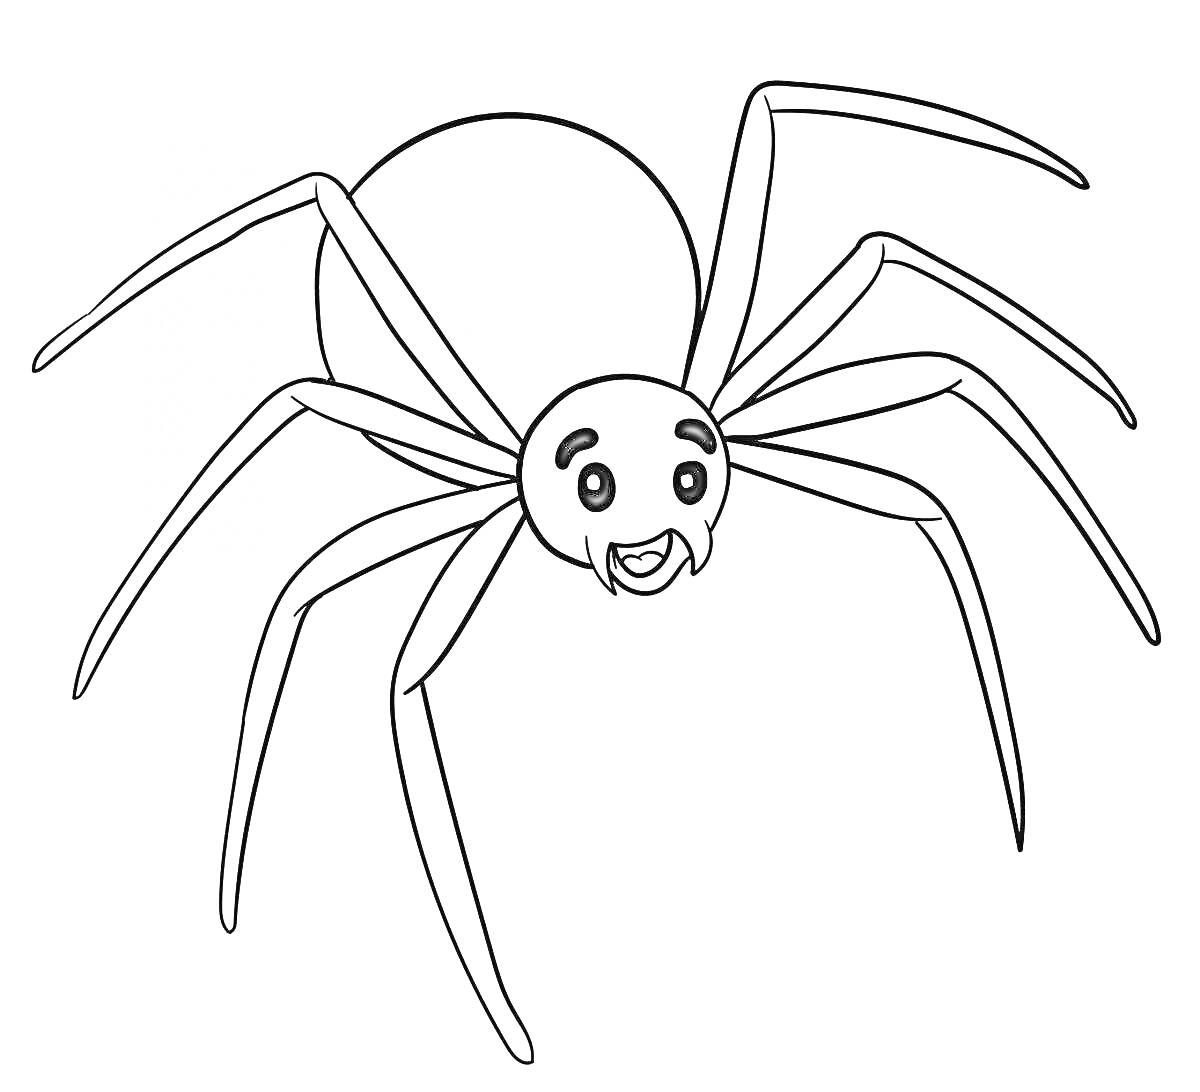 Весёлый паук с широкой улыбкой и восемью ногами